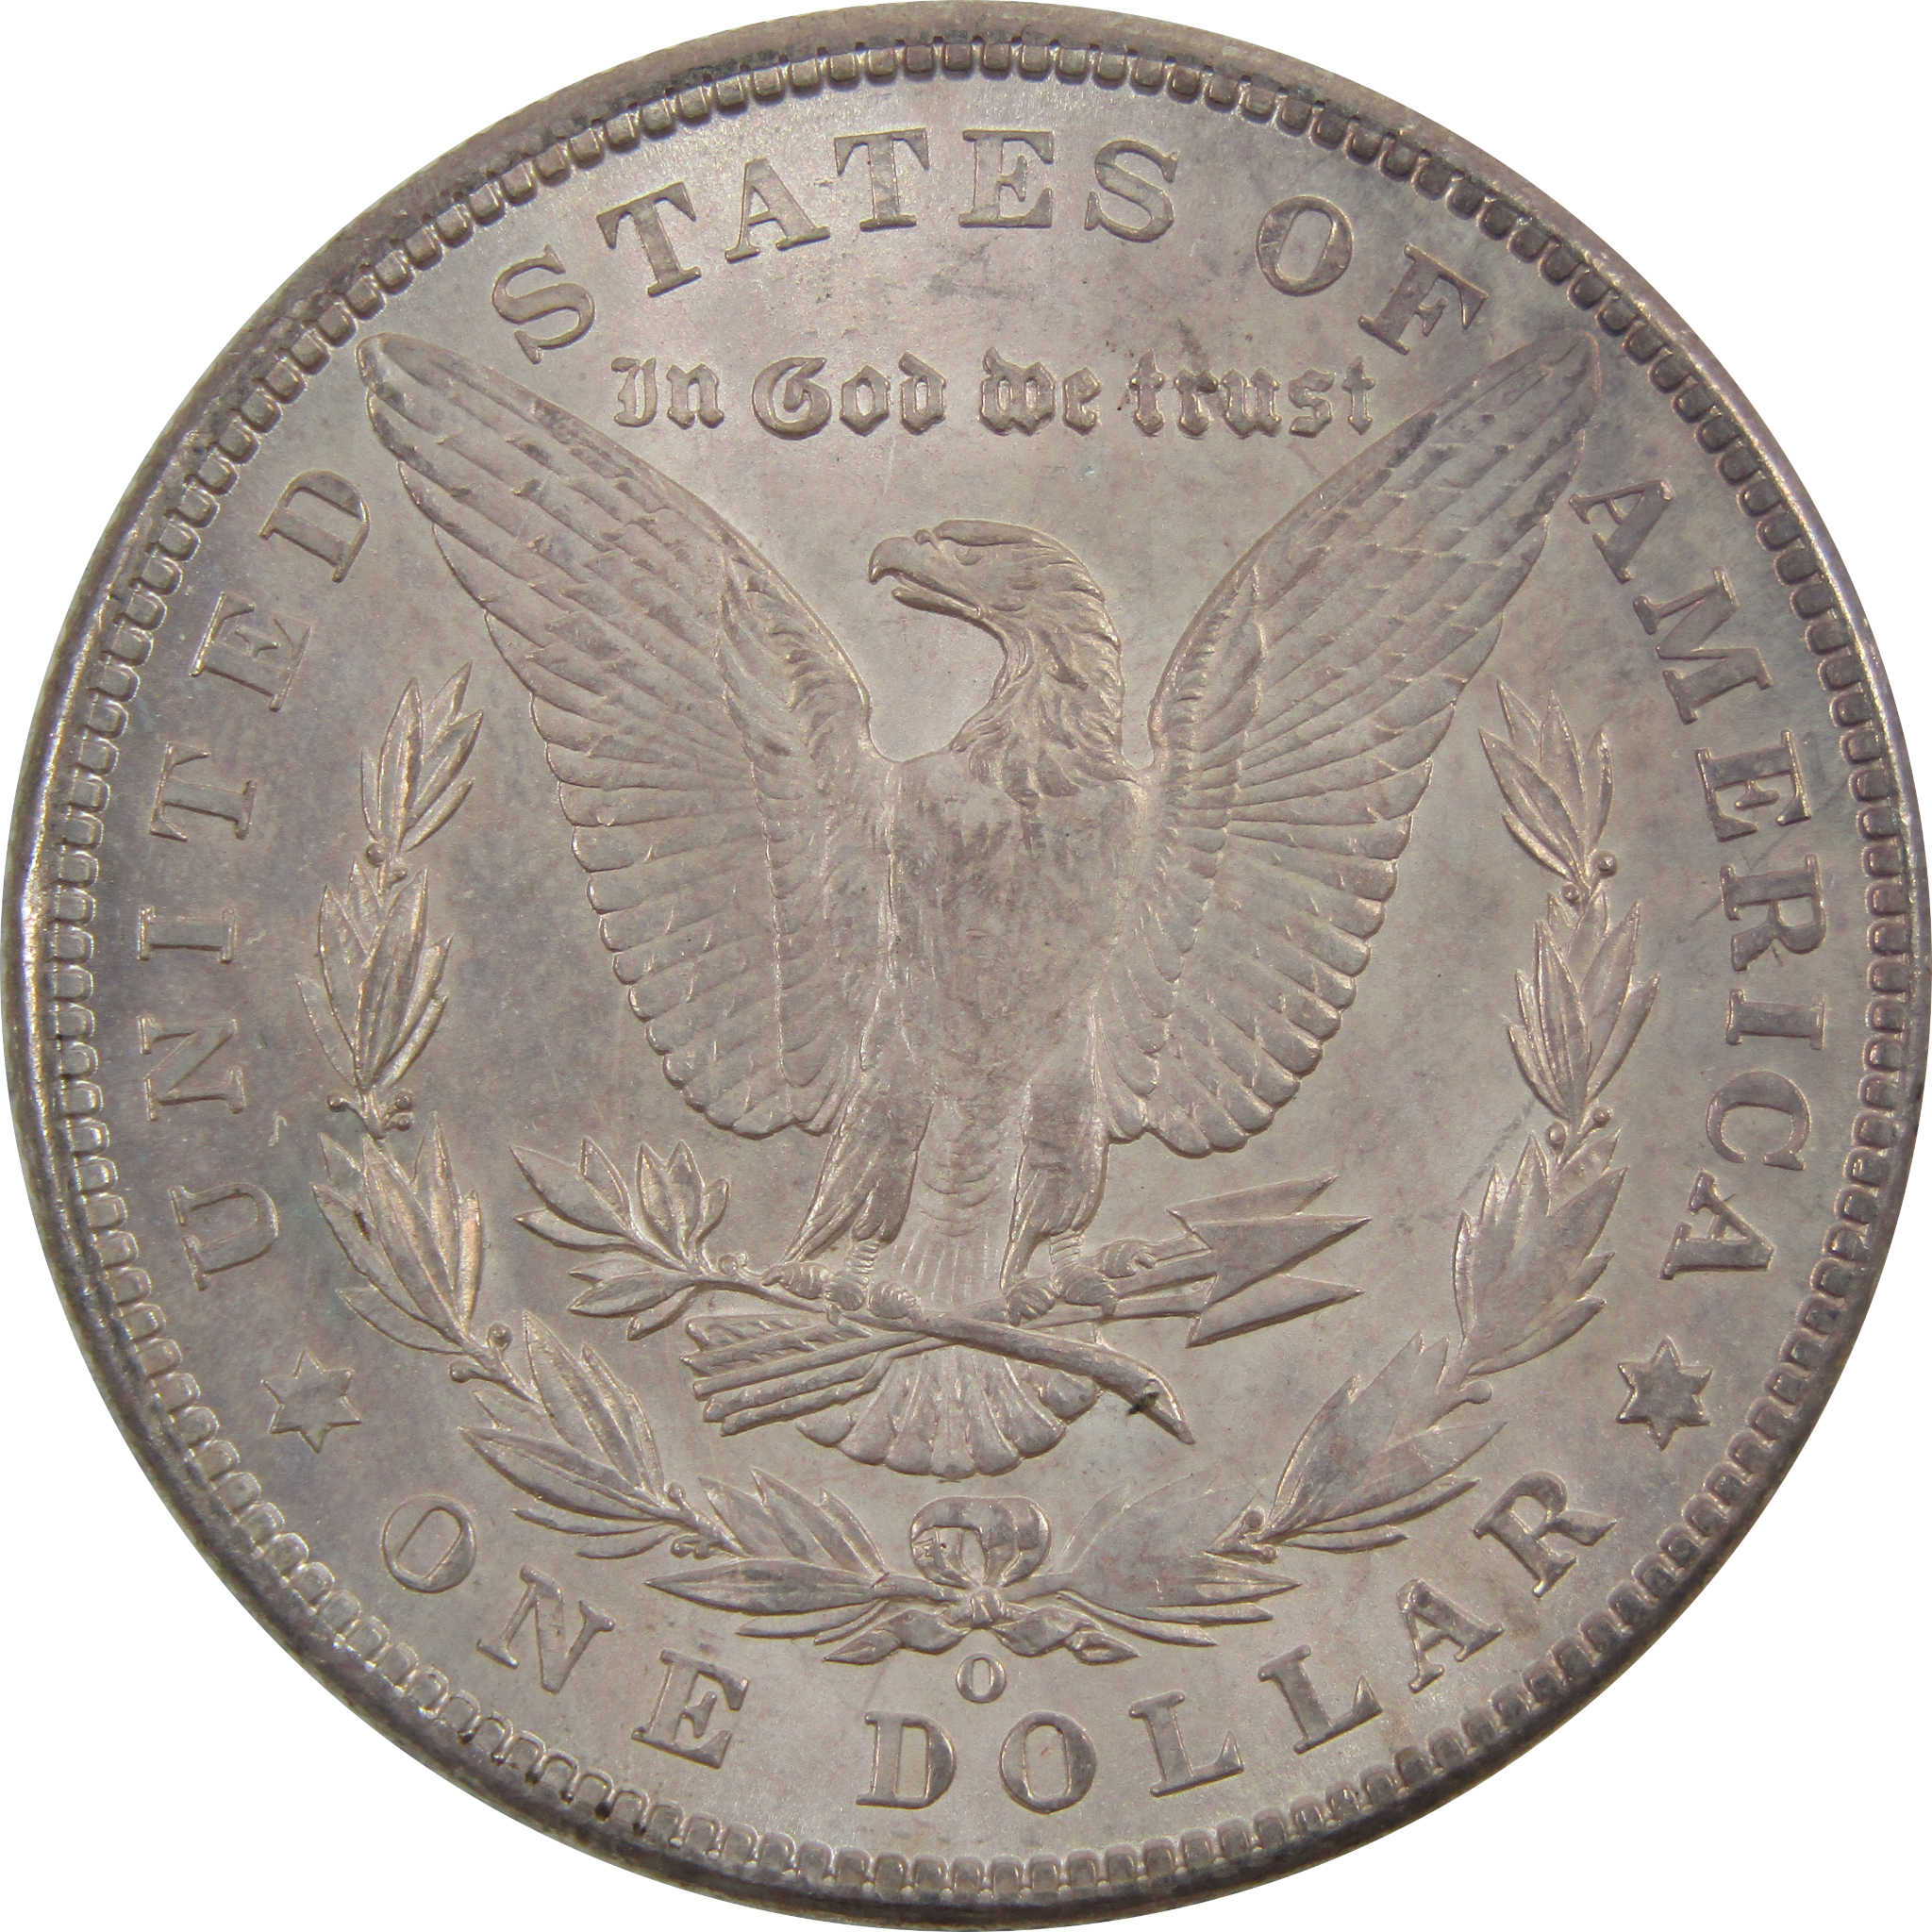 1902 O Morgan Dollar BU Uncirculated 90% Silver $1 Coin SKU:I5245 - Morgan coin - Morgan silver dollar - Morgan silver dollar for sale - Profile Coins &amp; Collectibles